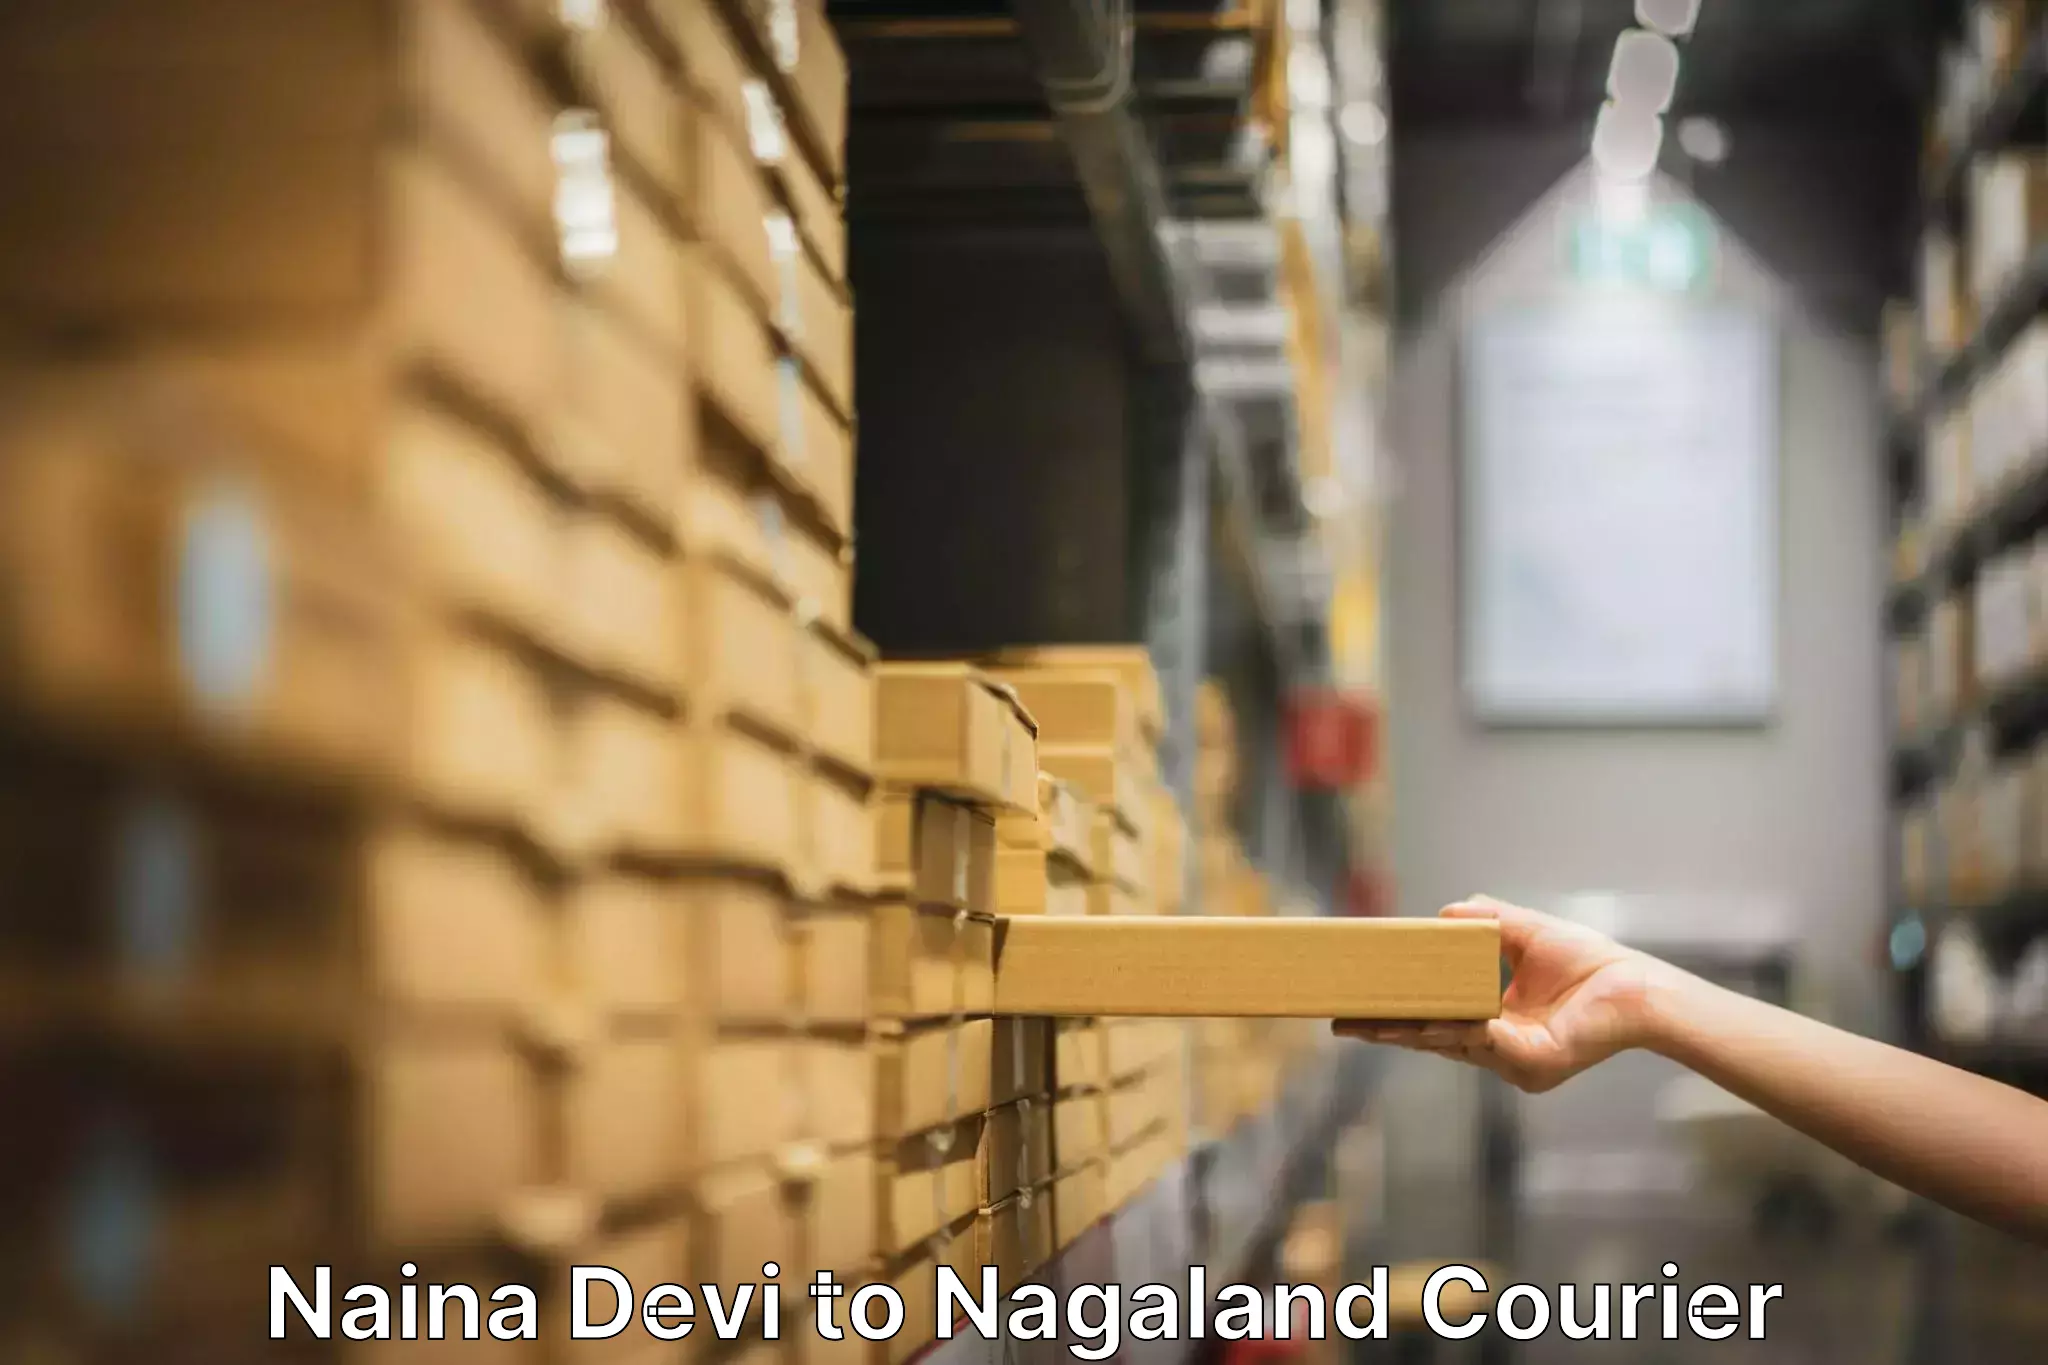 Stress-free moving Naina Devi to Nagaland